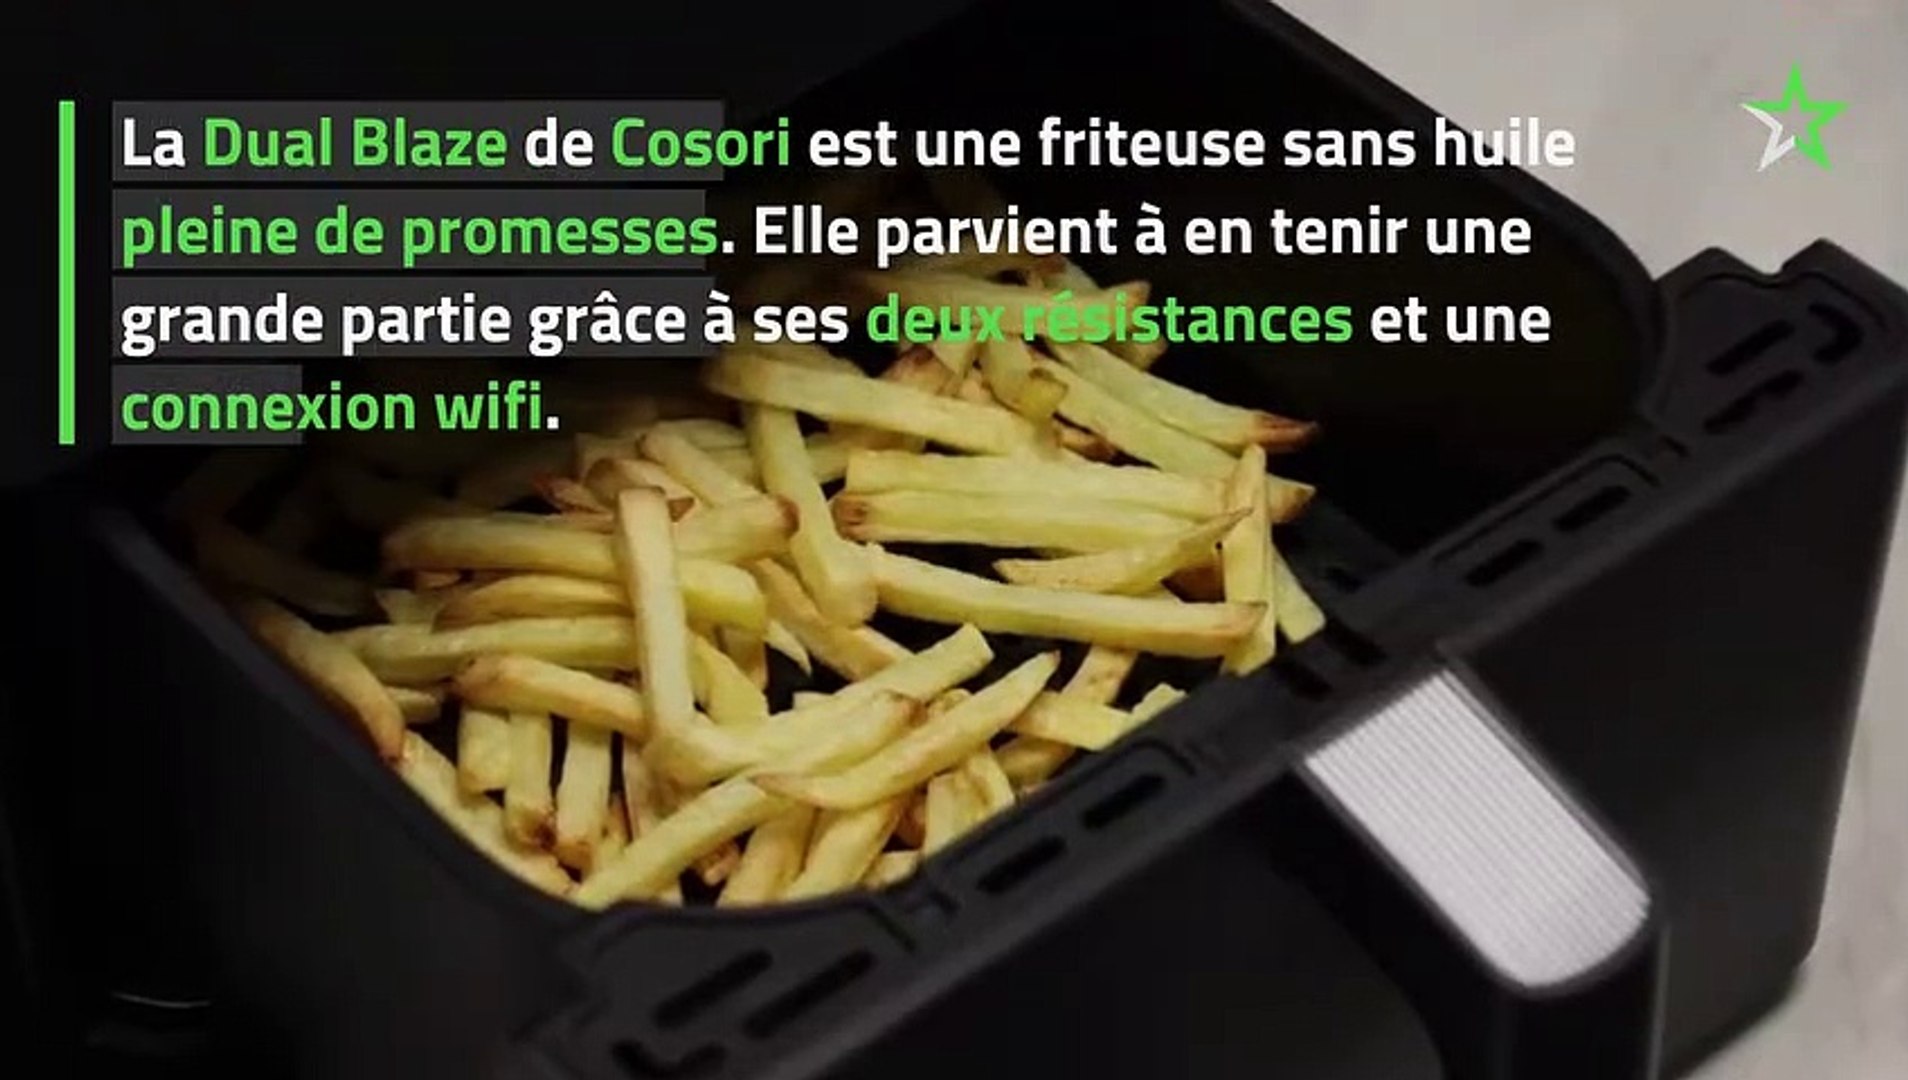 Test Cosori Dual Blaze : une friteuse sans huile étonnante - Vidéo  Dailymotion